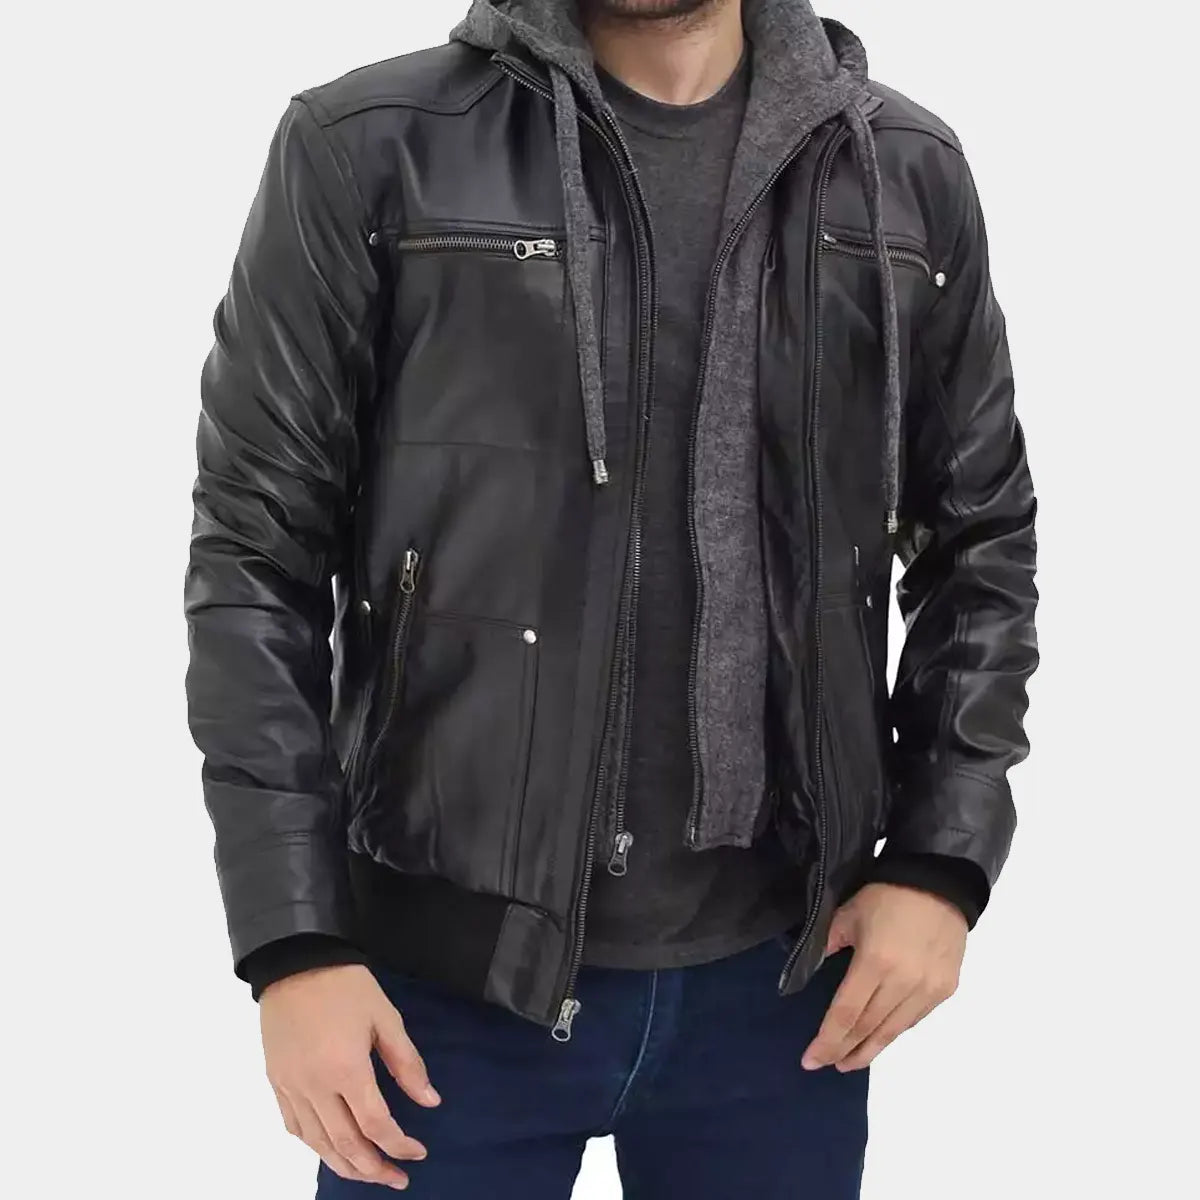 Mens Black Leather Jacket With Grey Hoodie